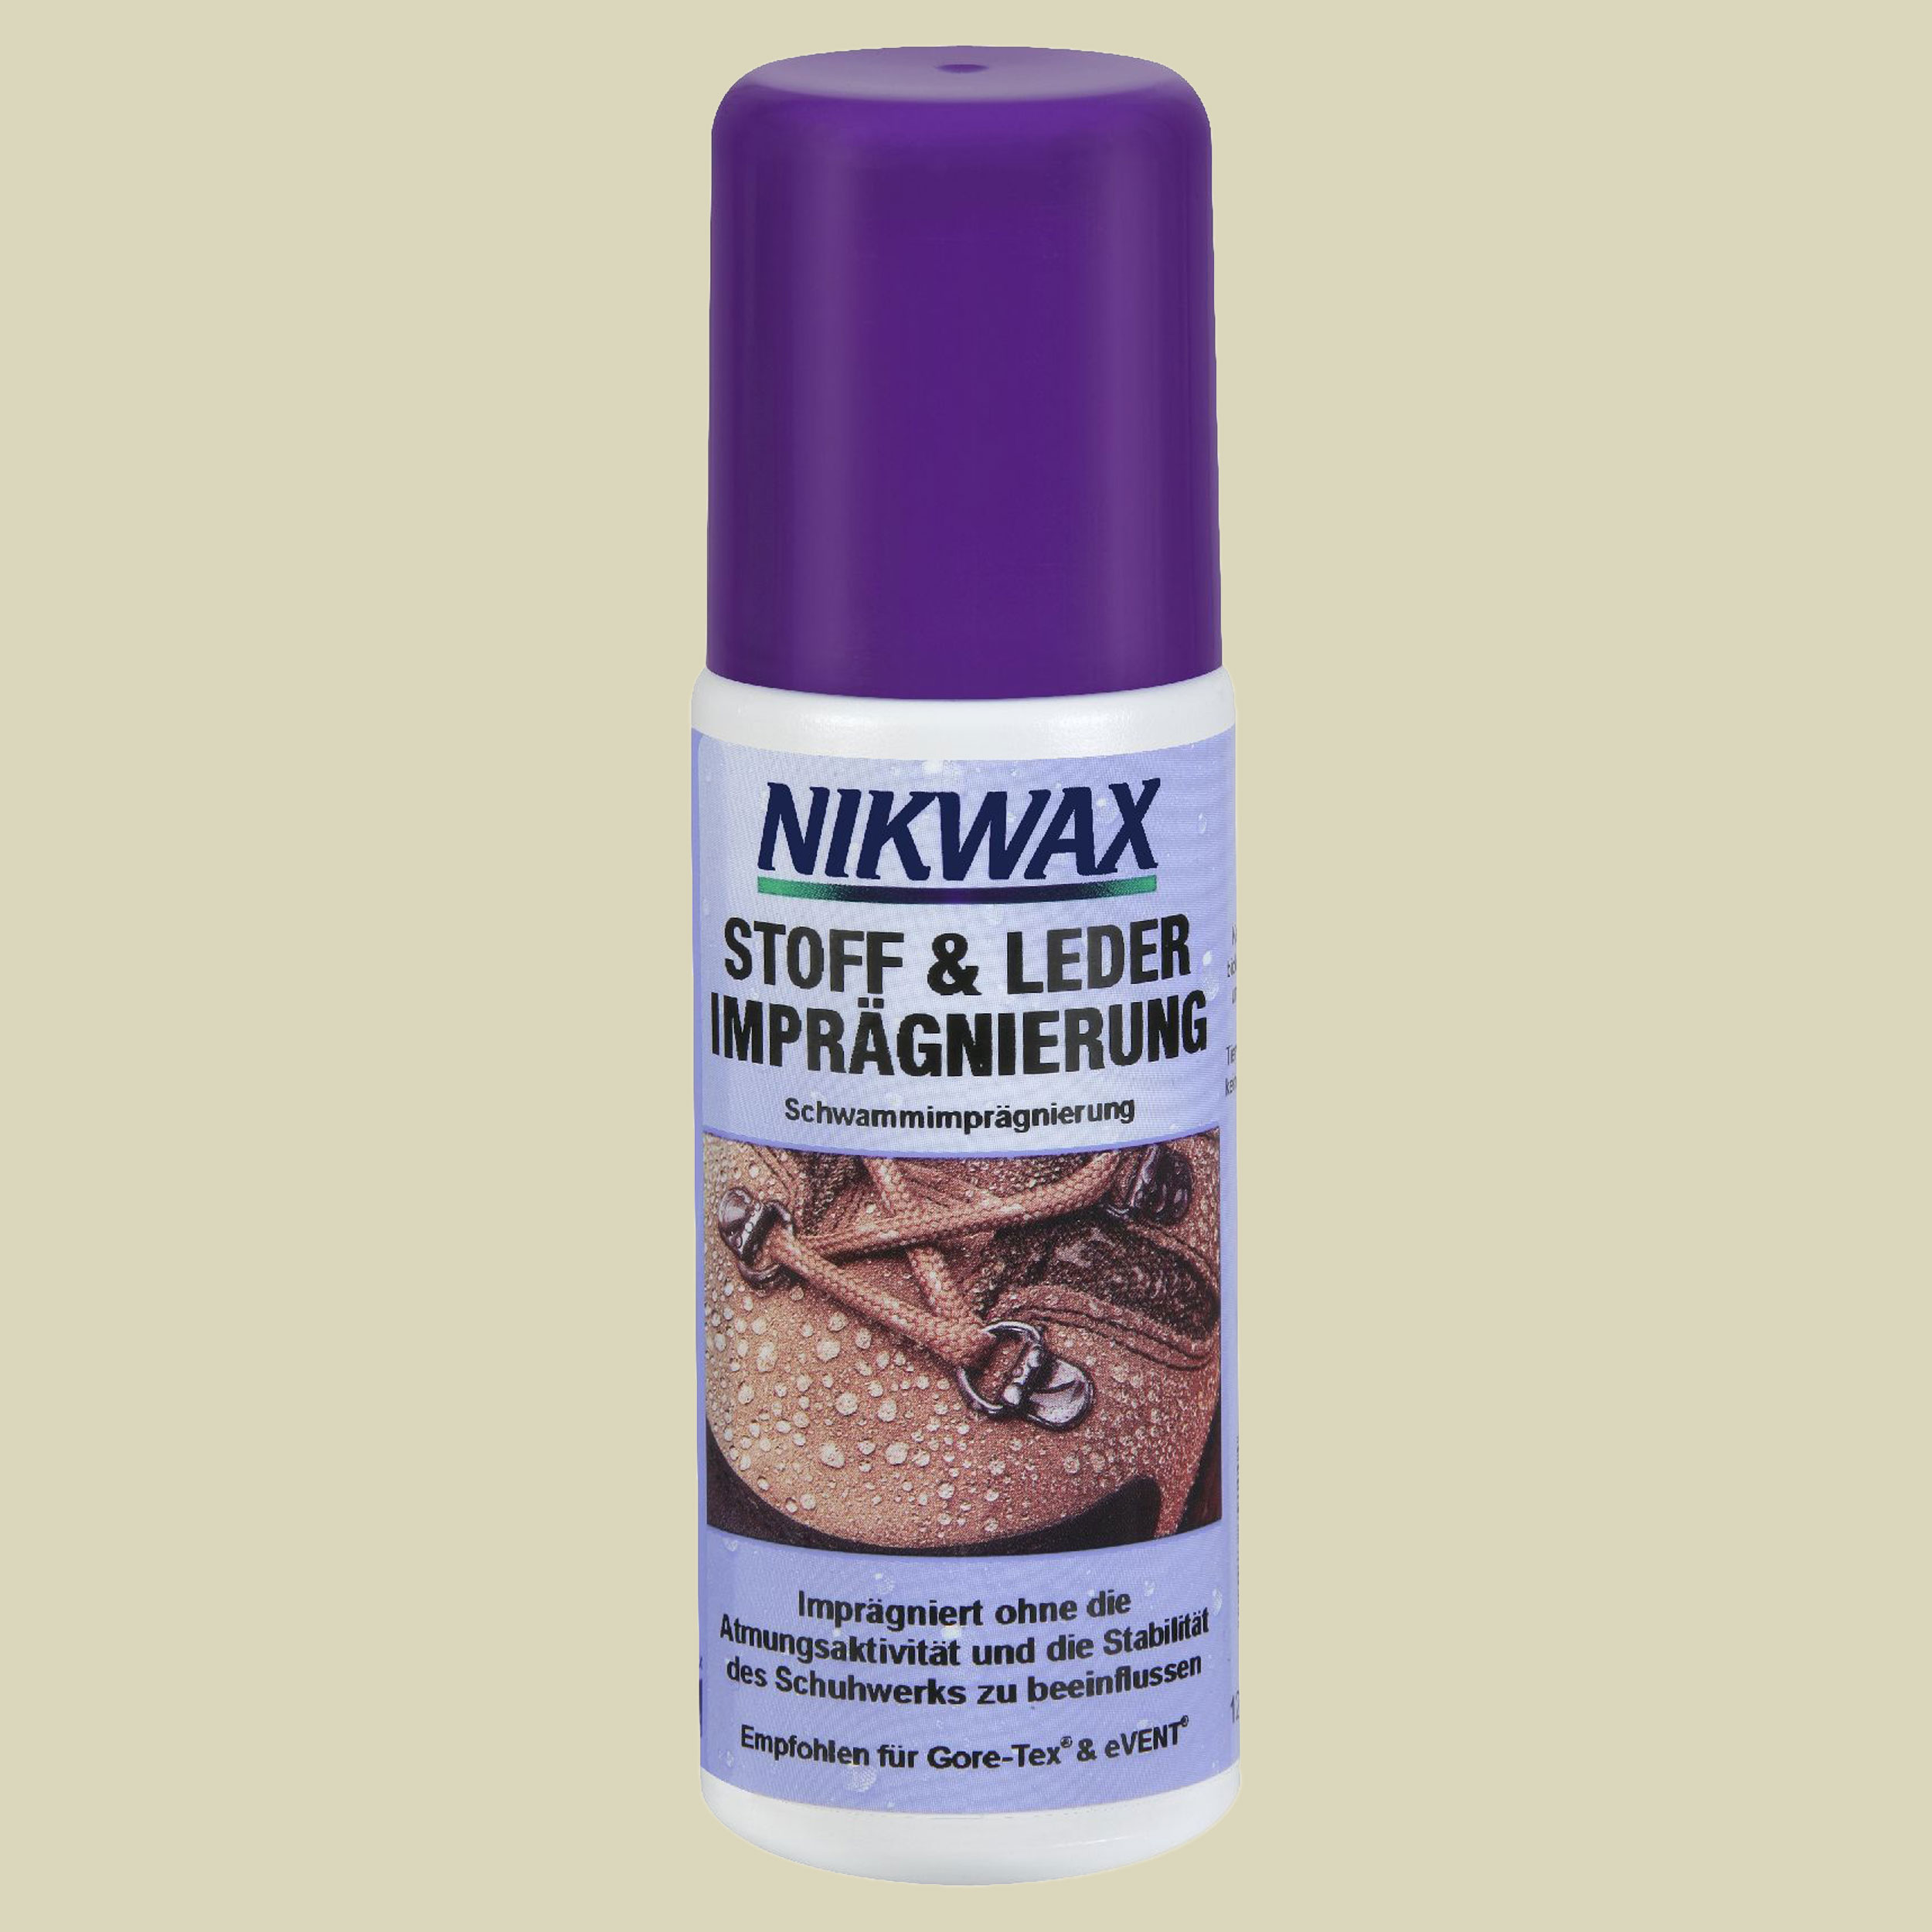 Nikwax Stoff & Leder Imprägnierung - Spray online kaufen